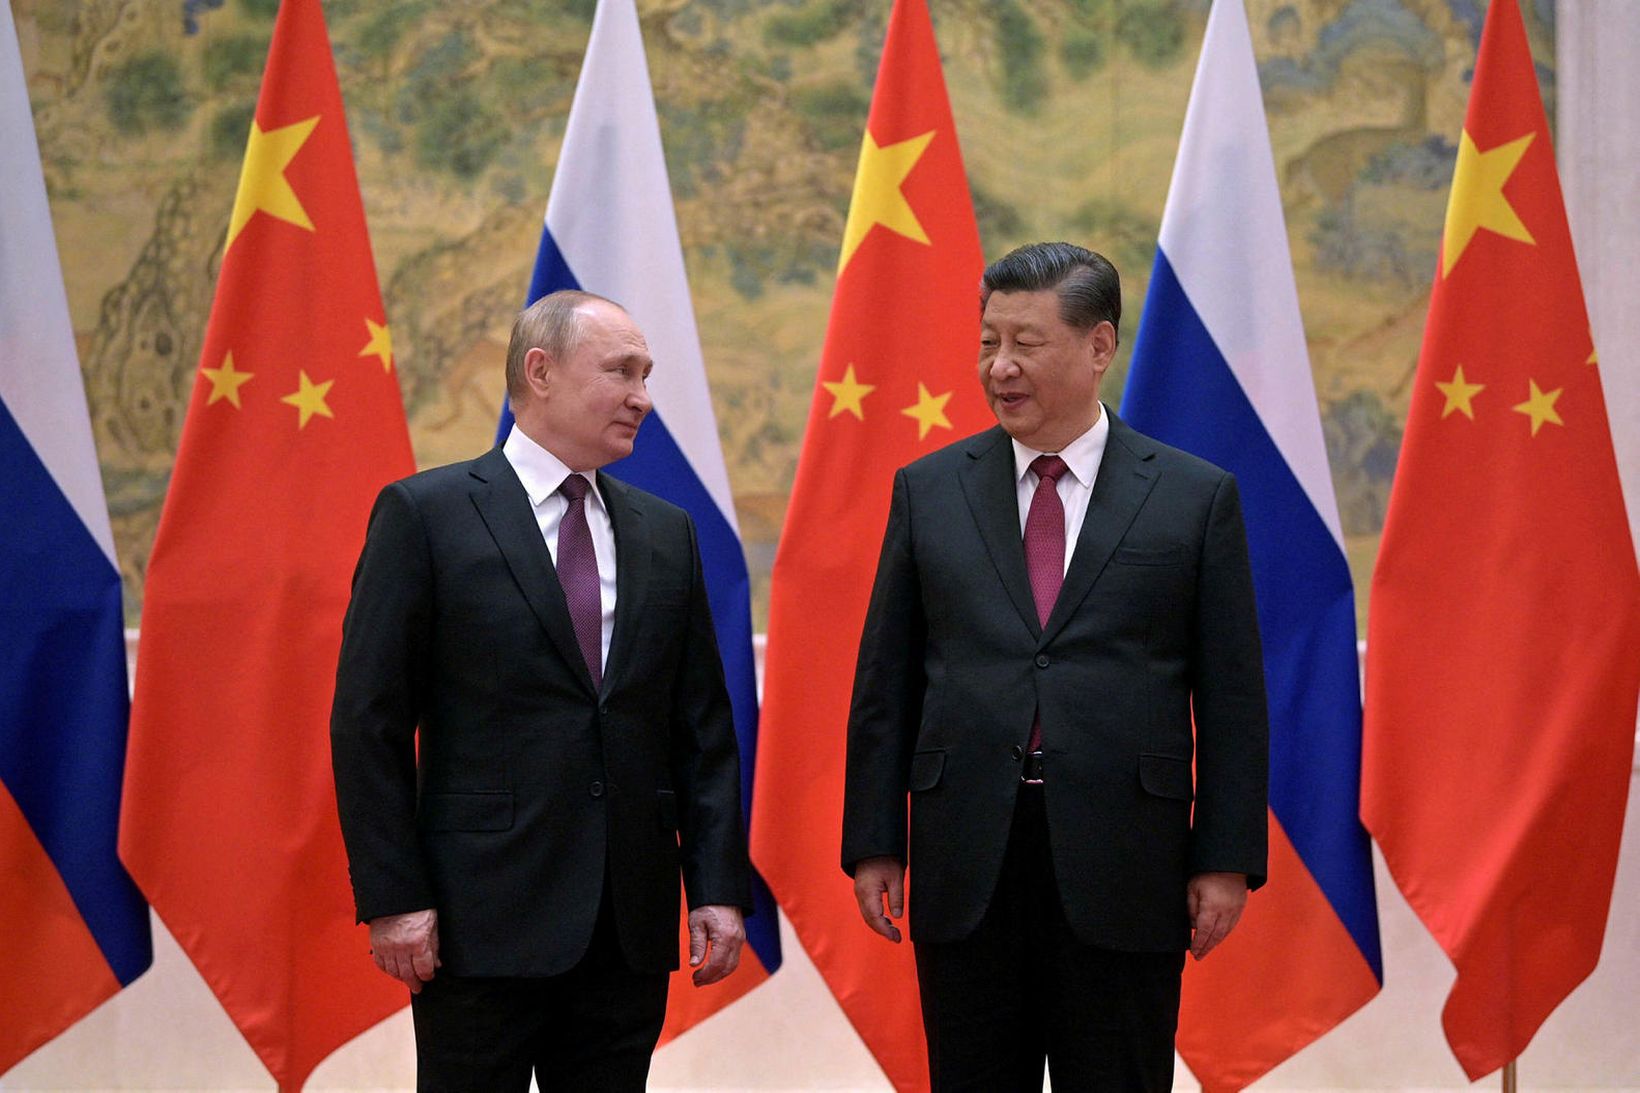 Vladimír Pútín, forseti Rússlands, og Xi Jinping, forseti Kína, funduðu …